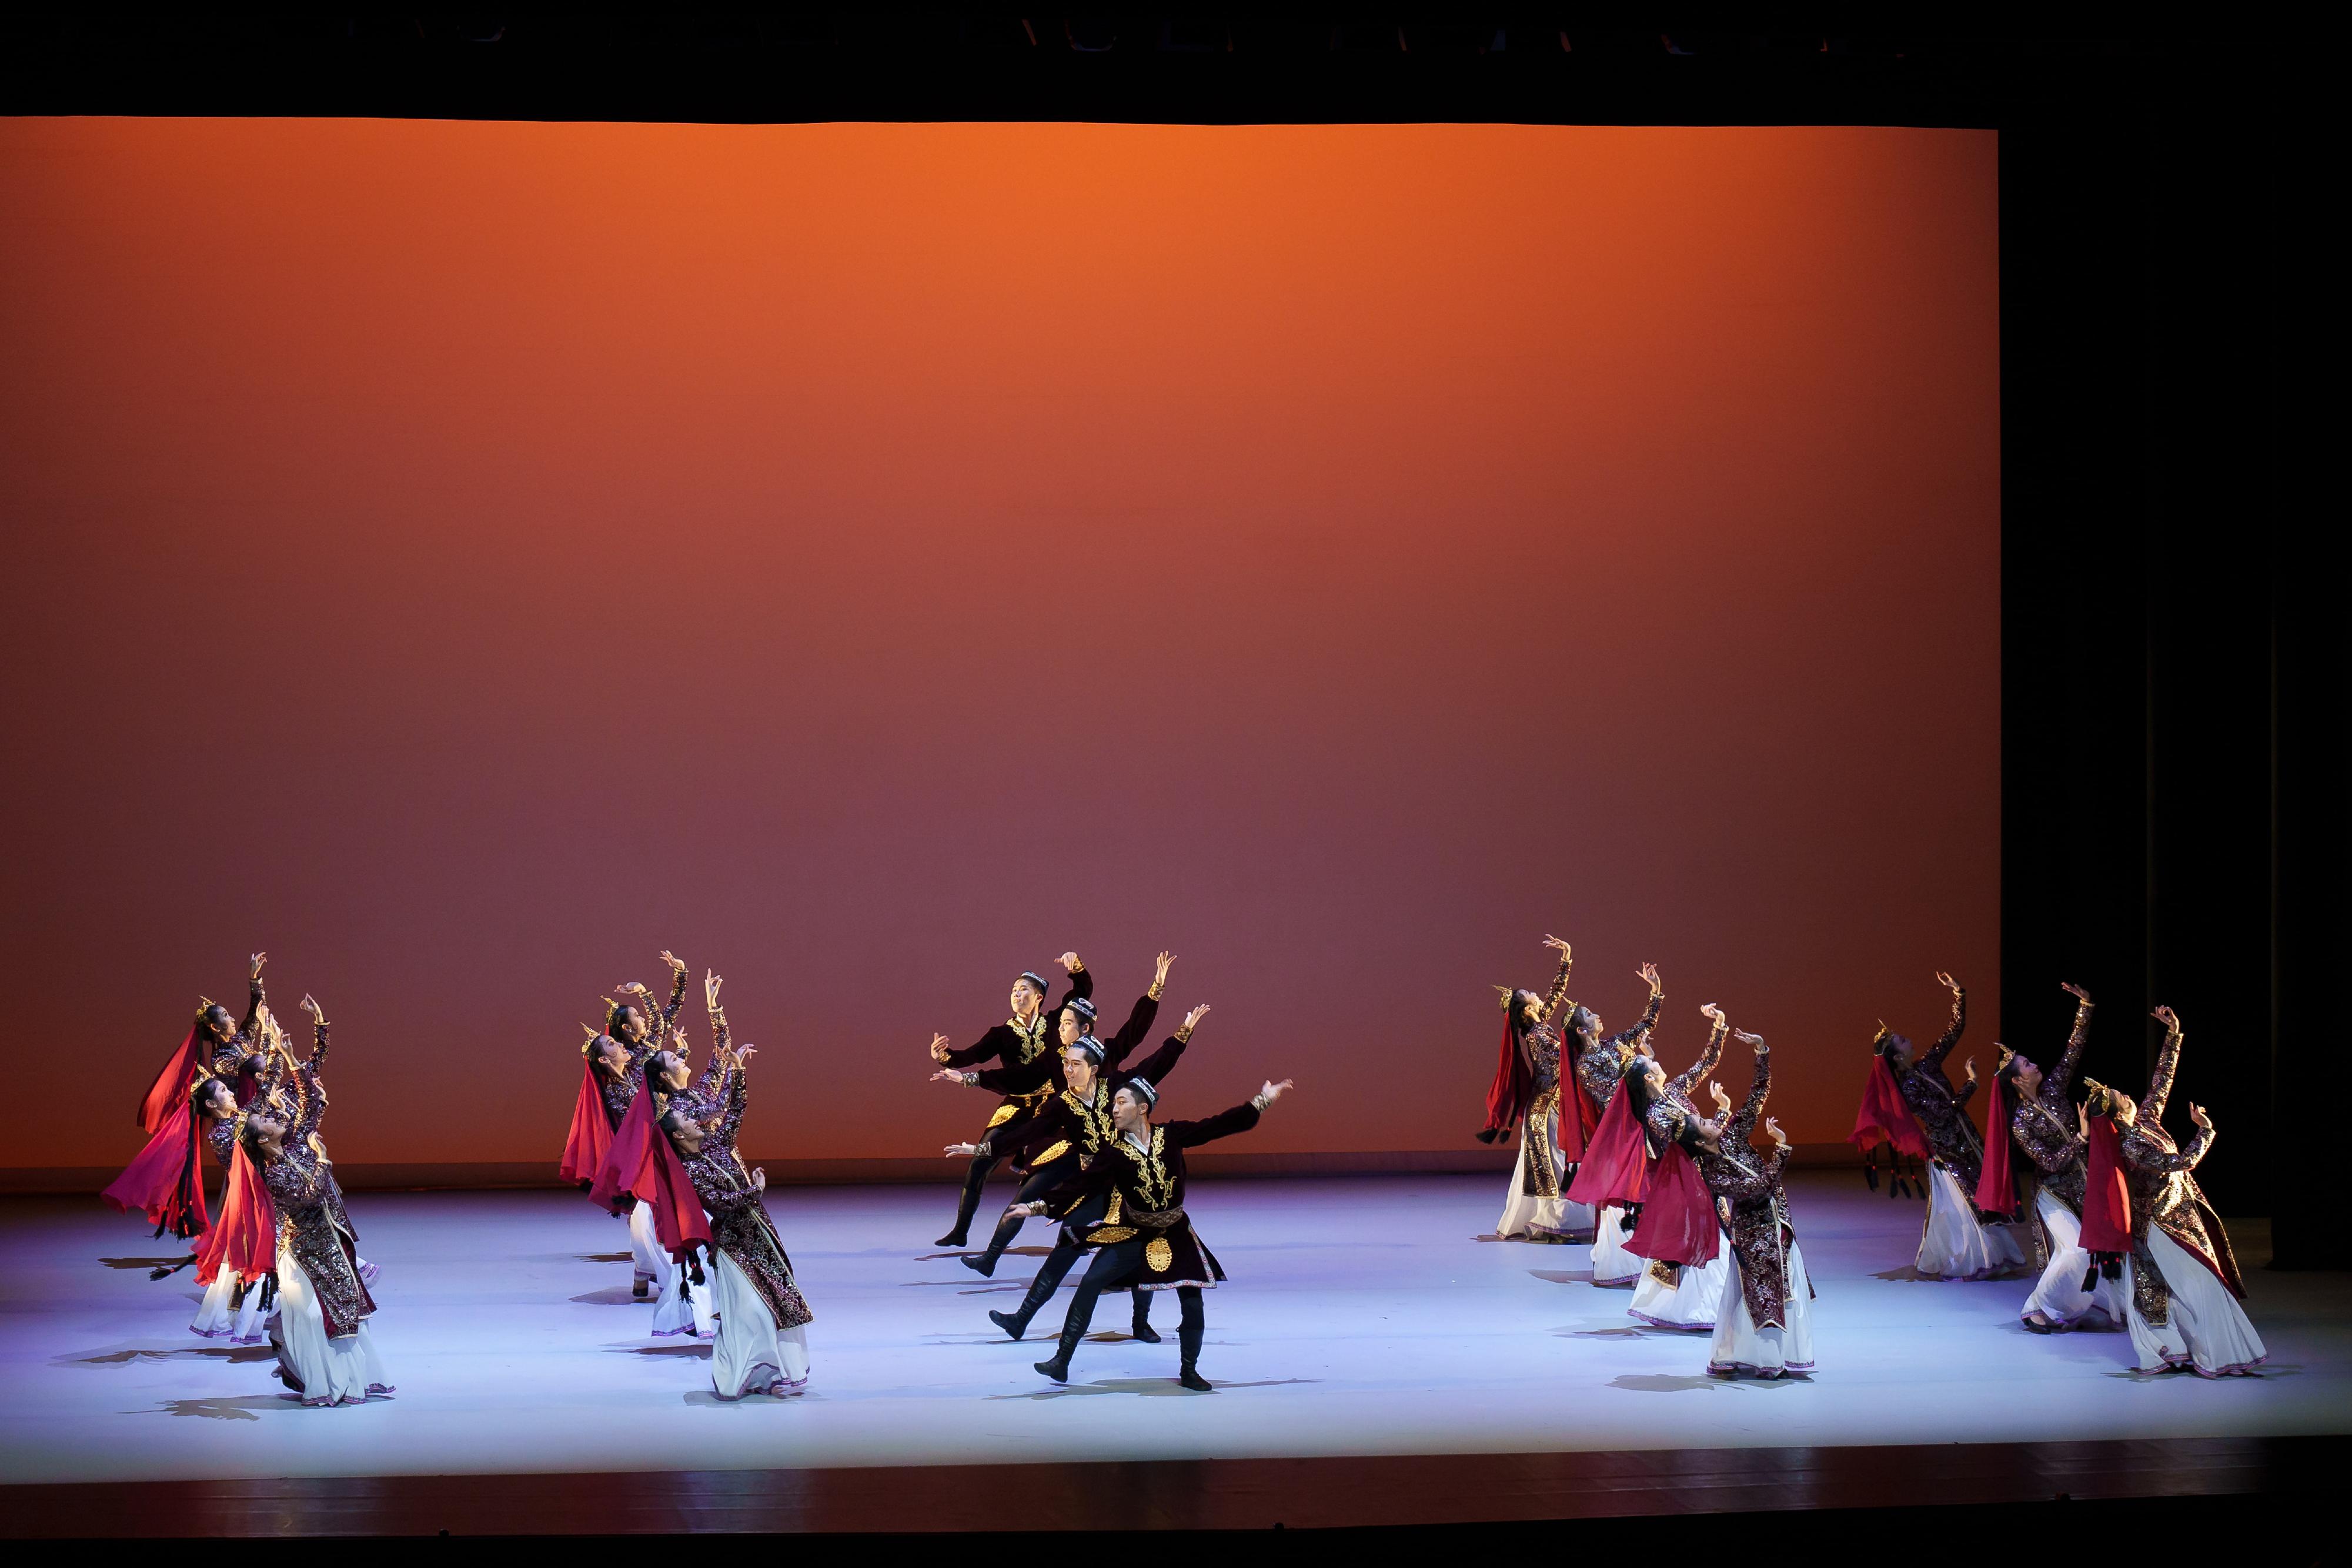 康樂及文化事務署（康文署）將於七月三十一日和八月七日下午分別在沙田大會堂和荃灣大會堂舉行「25．35演藝嘉年華」。一眾藝術家及表演團體將獻上多項免費演藝活動，歡迎市民參與。圖示香港演藝學院舞蹈學院學生，他們將為觀眾帶來現代芭蕾舞及維吾爾族舞蹈表演。